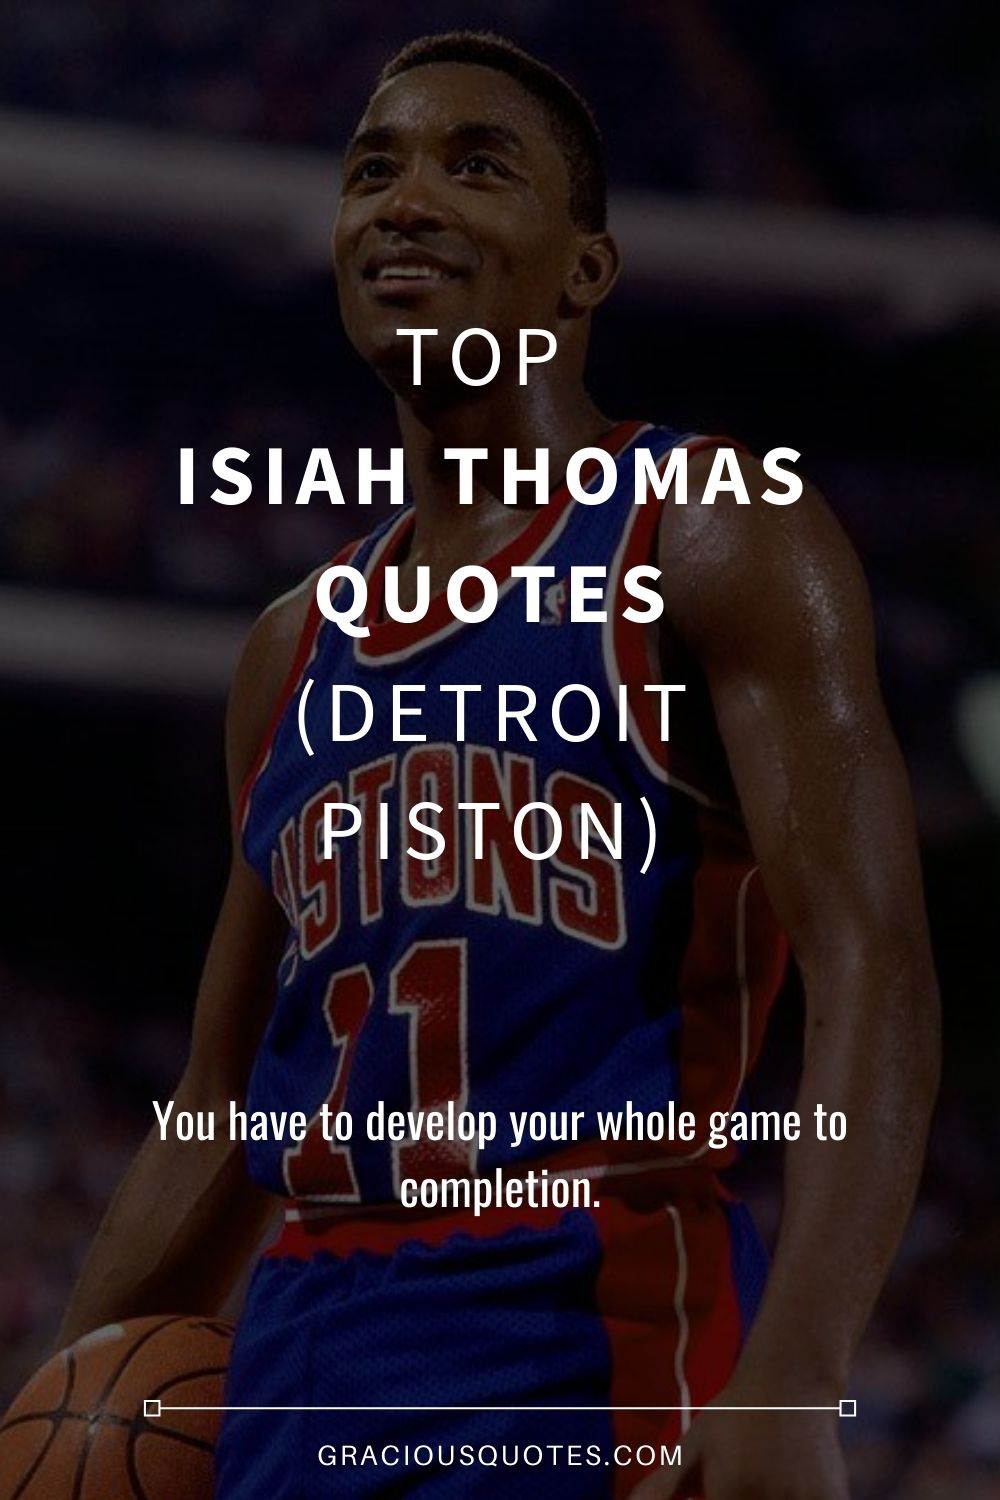 Top Isiah Thomas Quotes (DETROIT PISTON) - Gracious Quotes